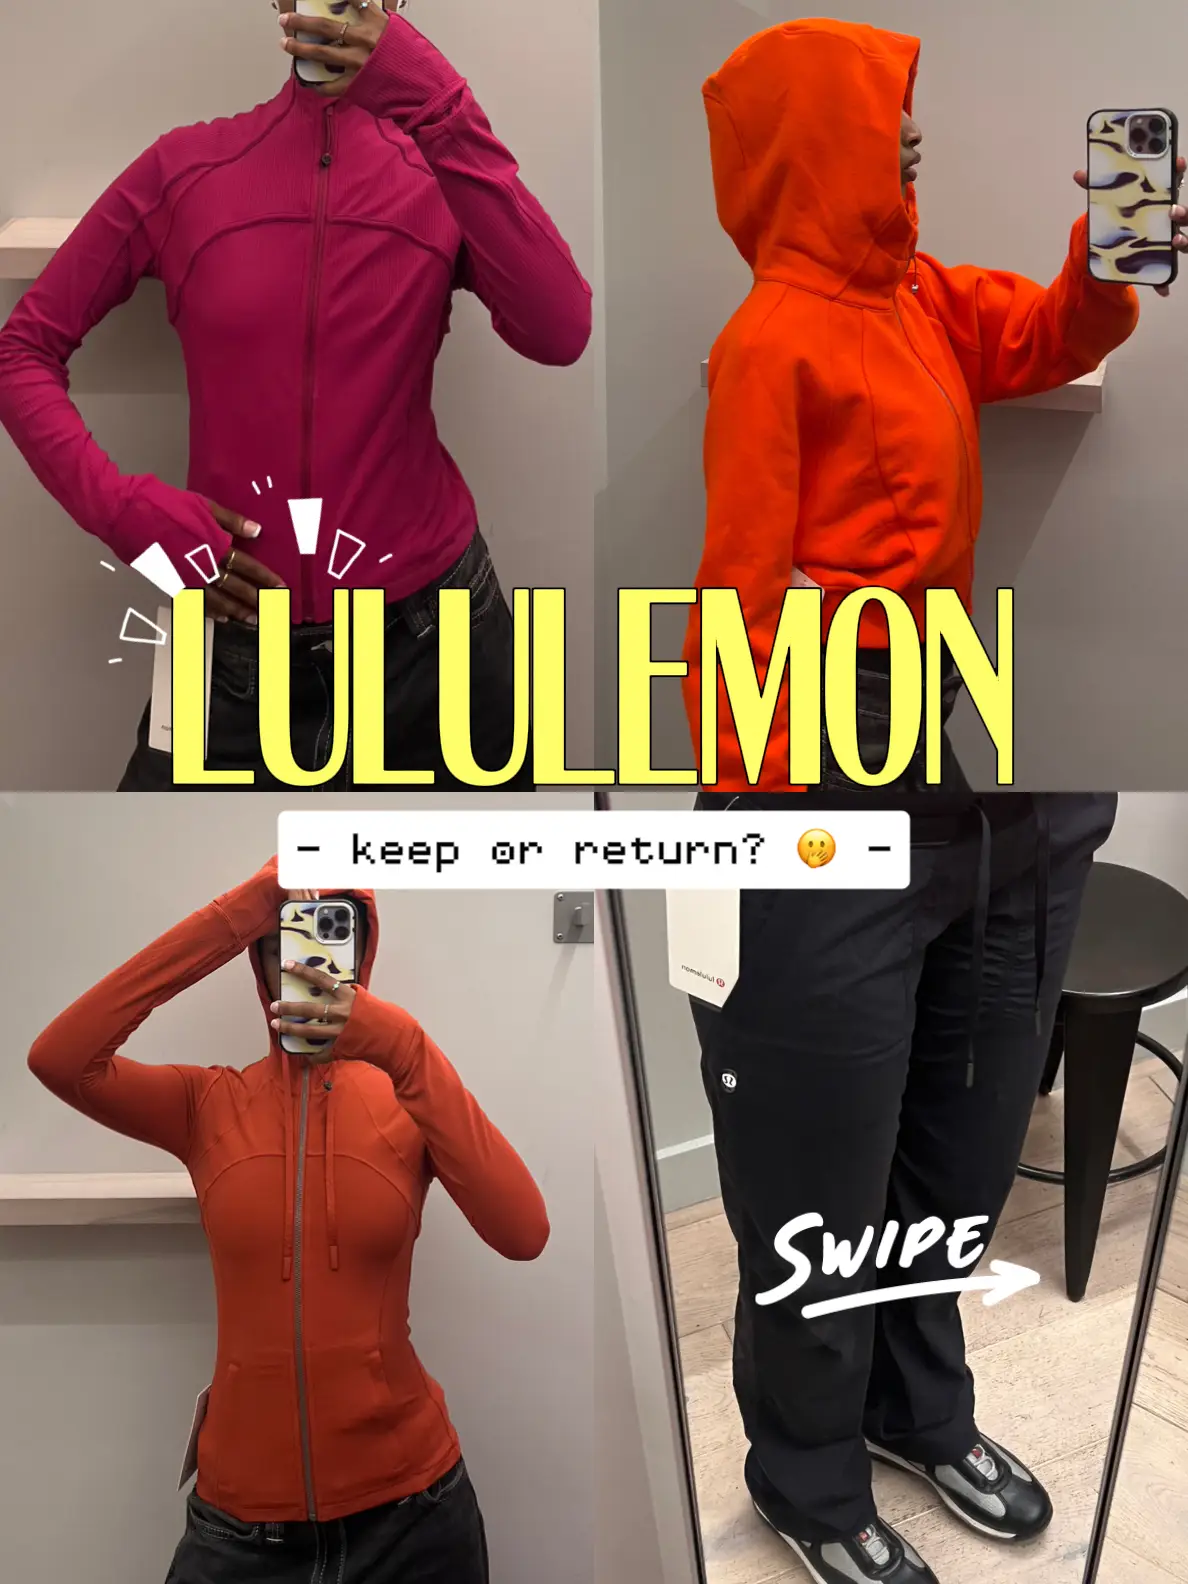 Nicknames for Lululemon: LuLu, Lulu-lemon, Lulu lemon 🍋, Lemon